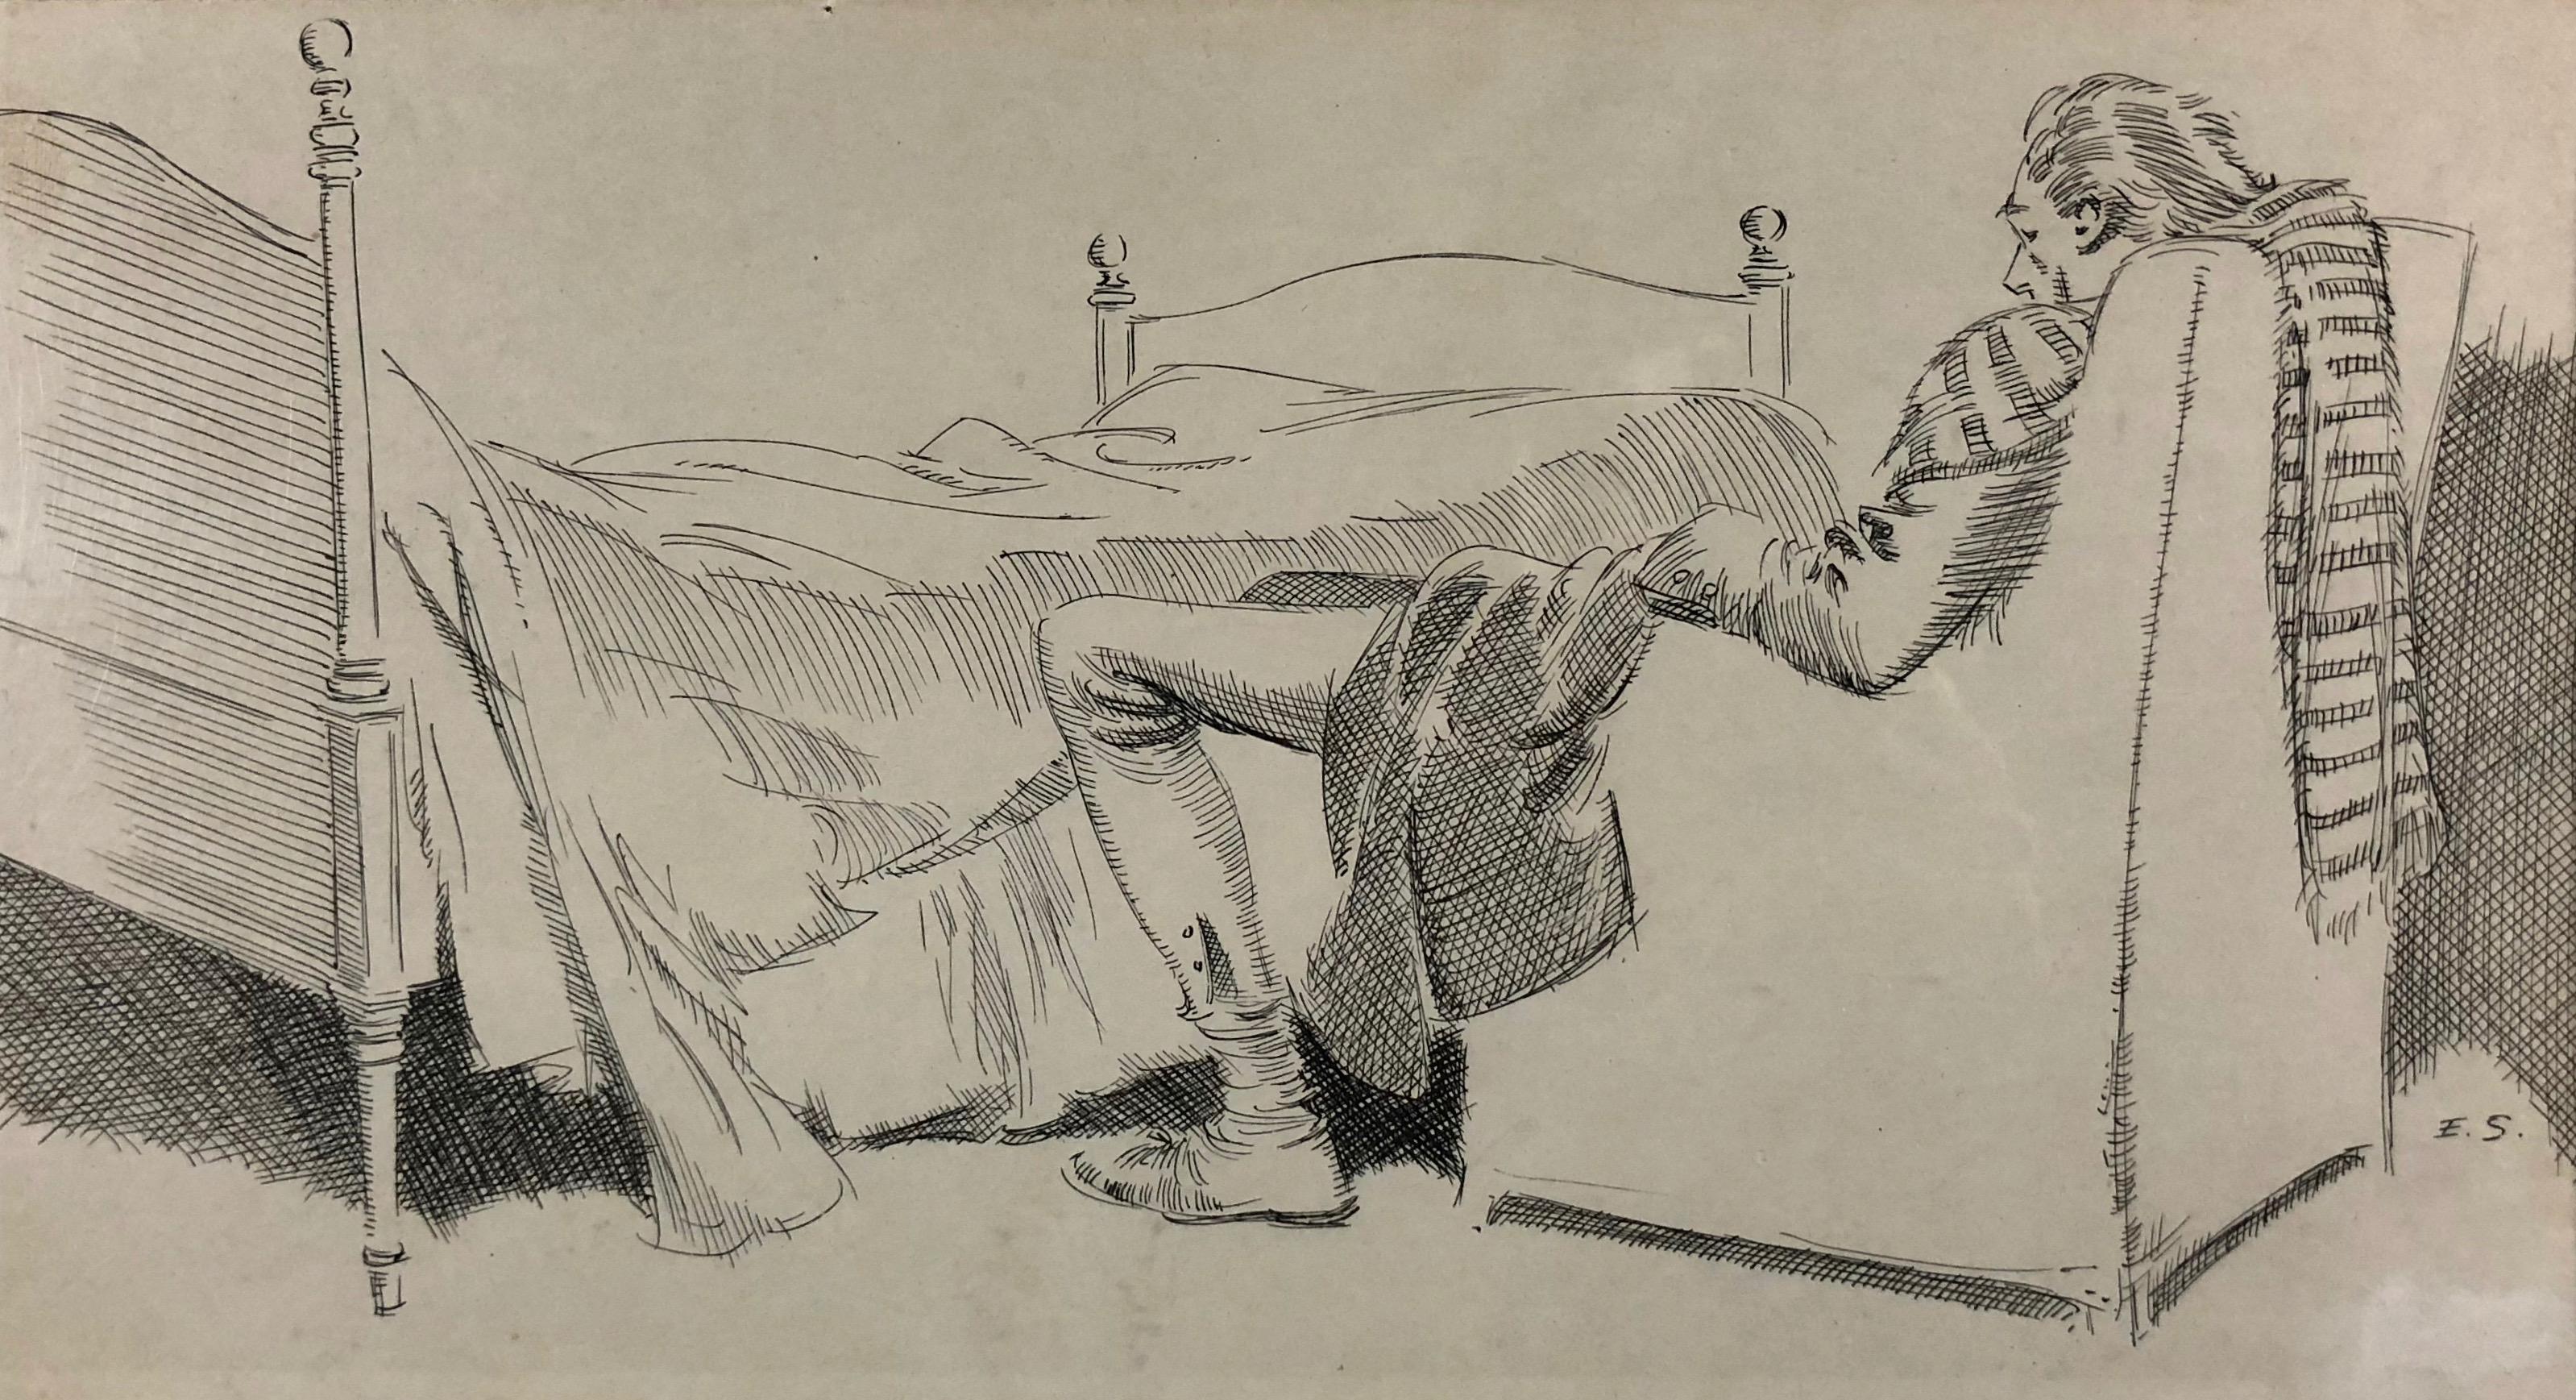 Gentleman Napping in a Chair (möglicherweise für Ichabod Crane oder andere Illustrationen) – Art von Everett Shinn